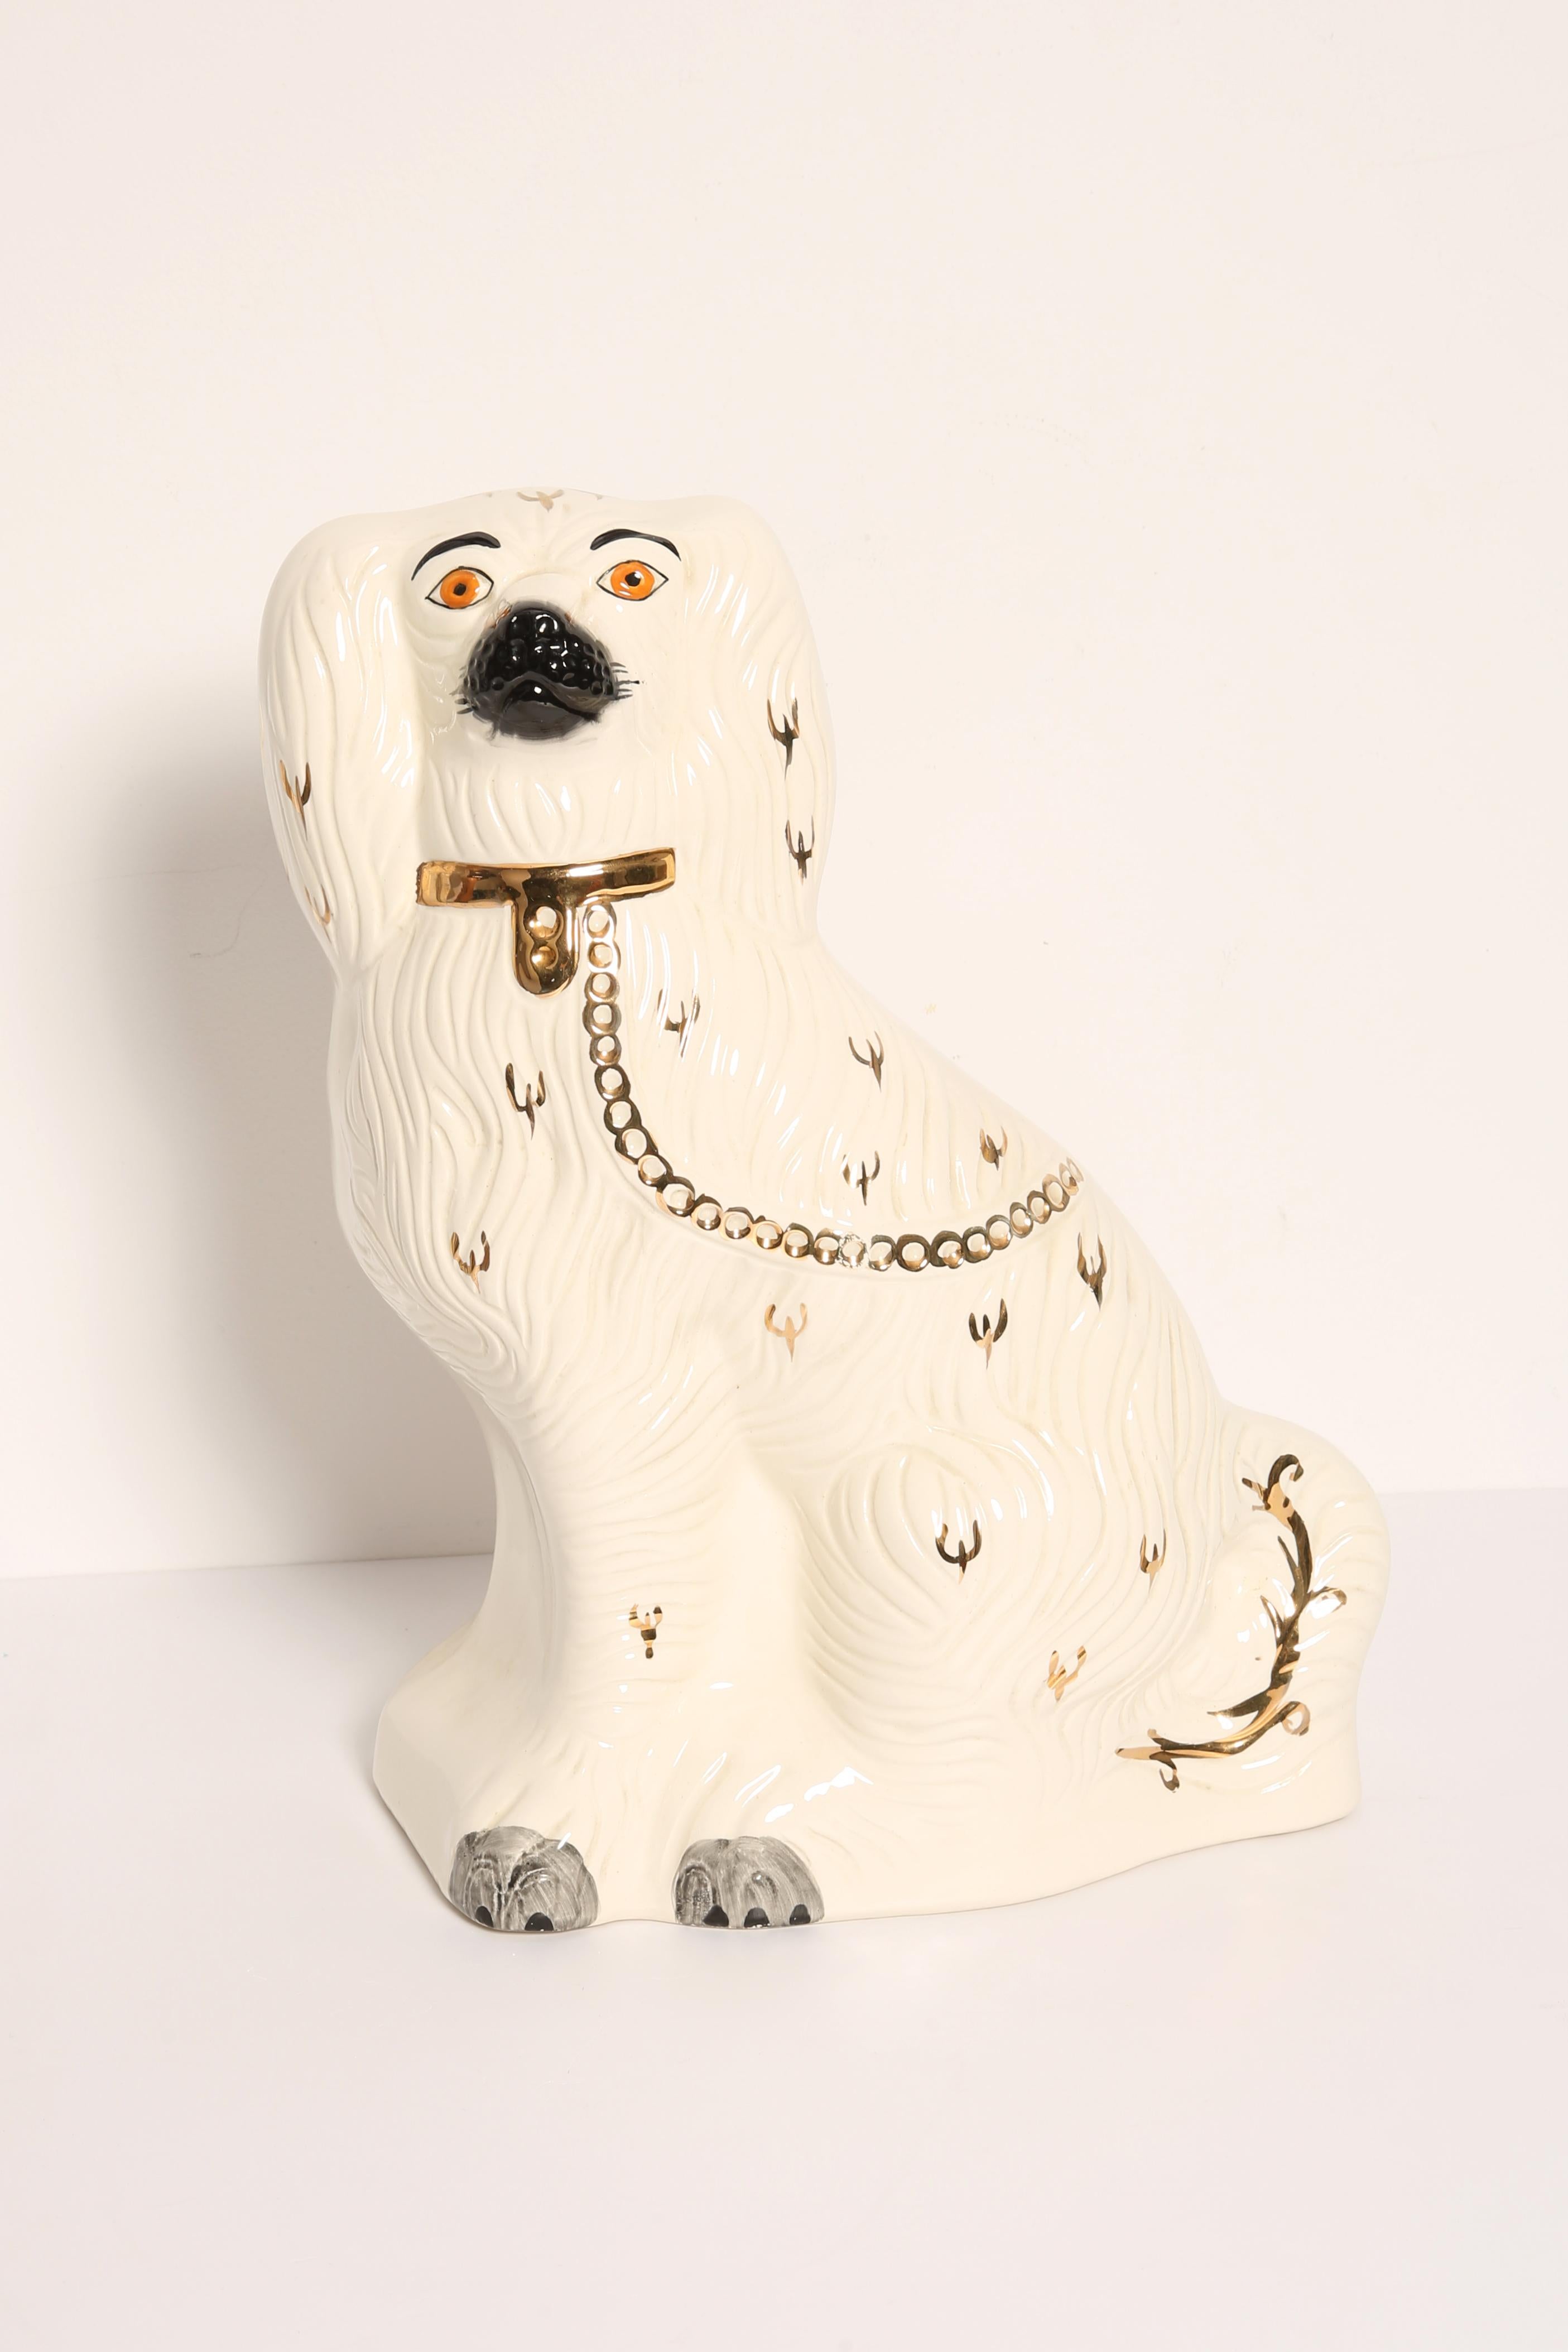 Céramique peinte, bon état d'origine vintage. Belle et unique sculpture décorative. La sculpture de chien du Yorkshire a été produite dans le Staffordshire, en Angleterre, dans les années 1960.